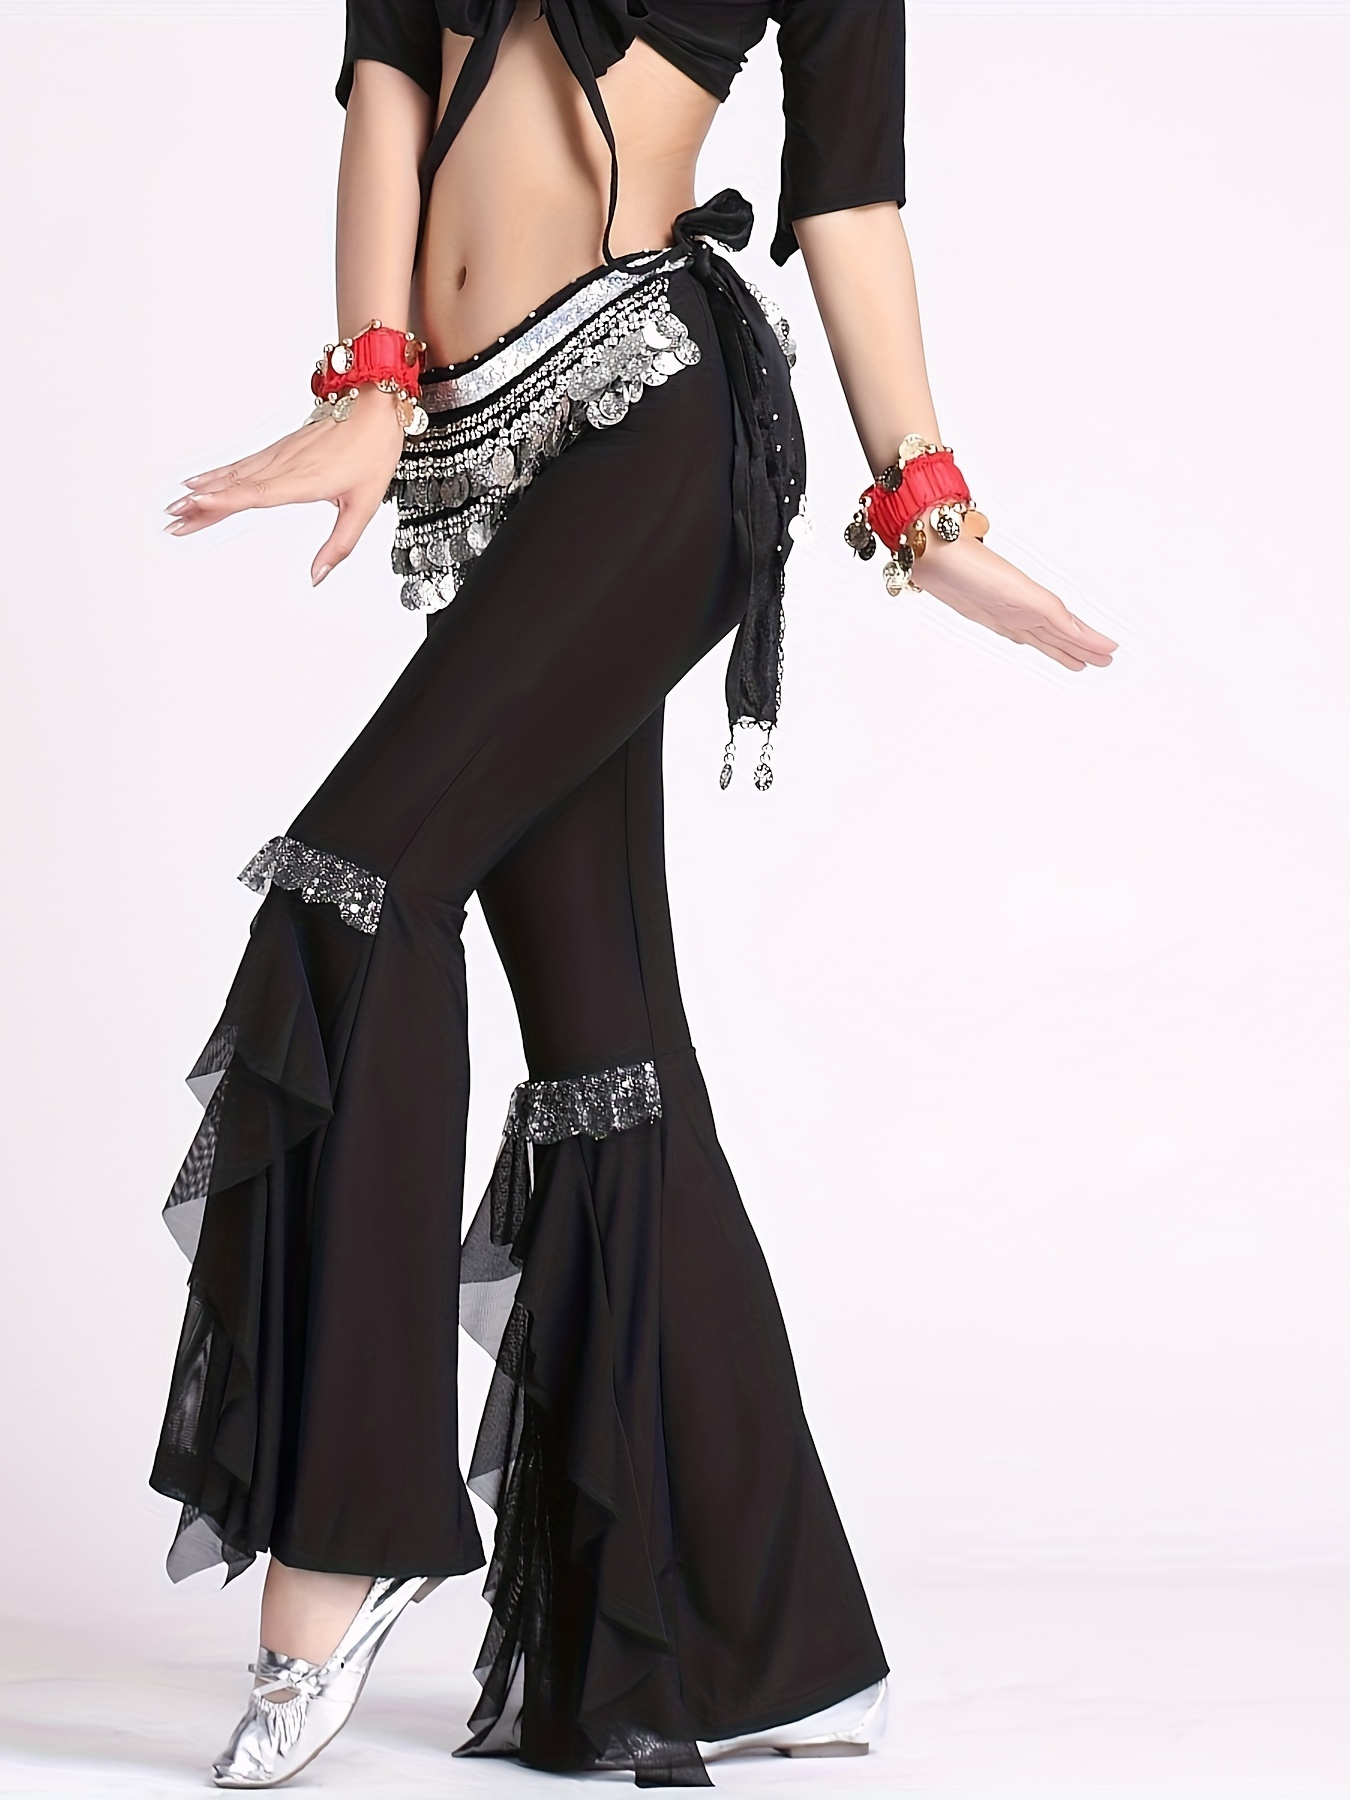 Foulard de hanche de danse orientale noir avec pièces d'or / ceinture